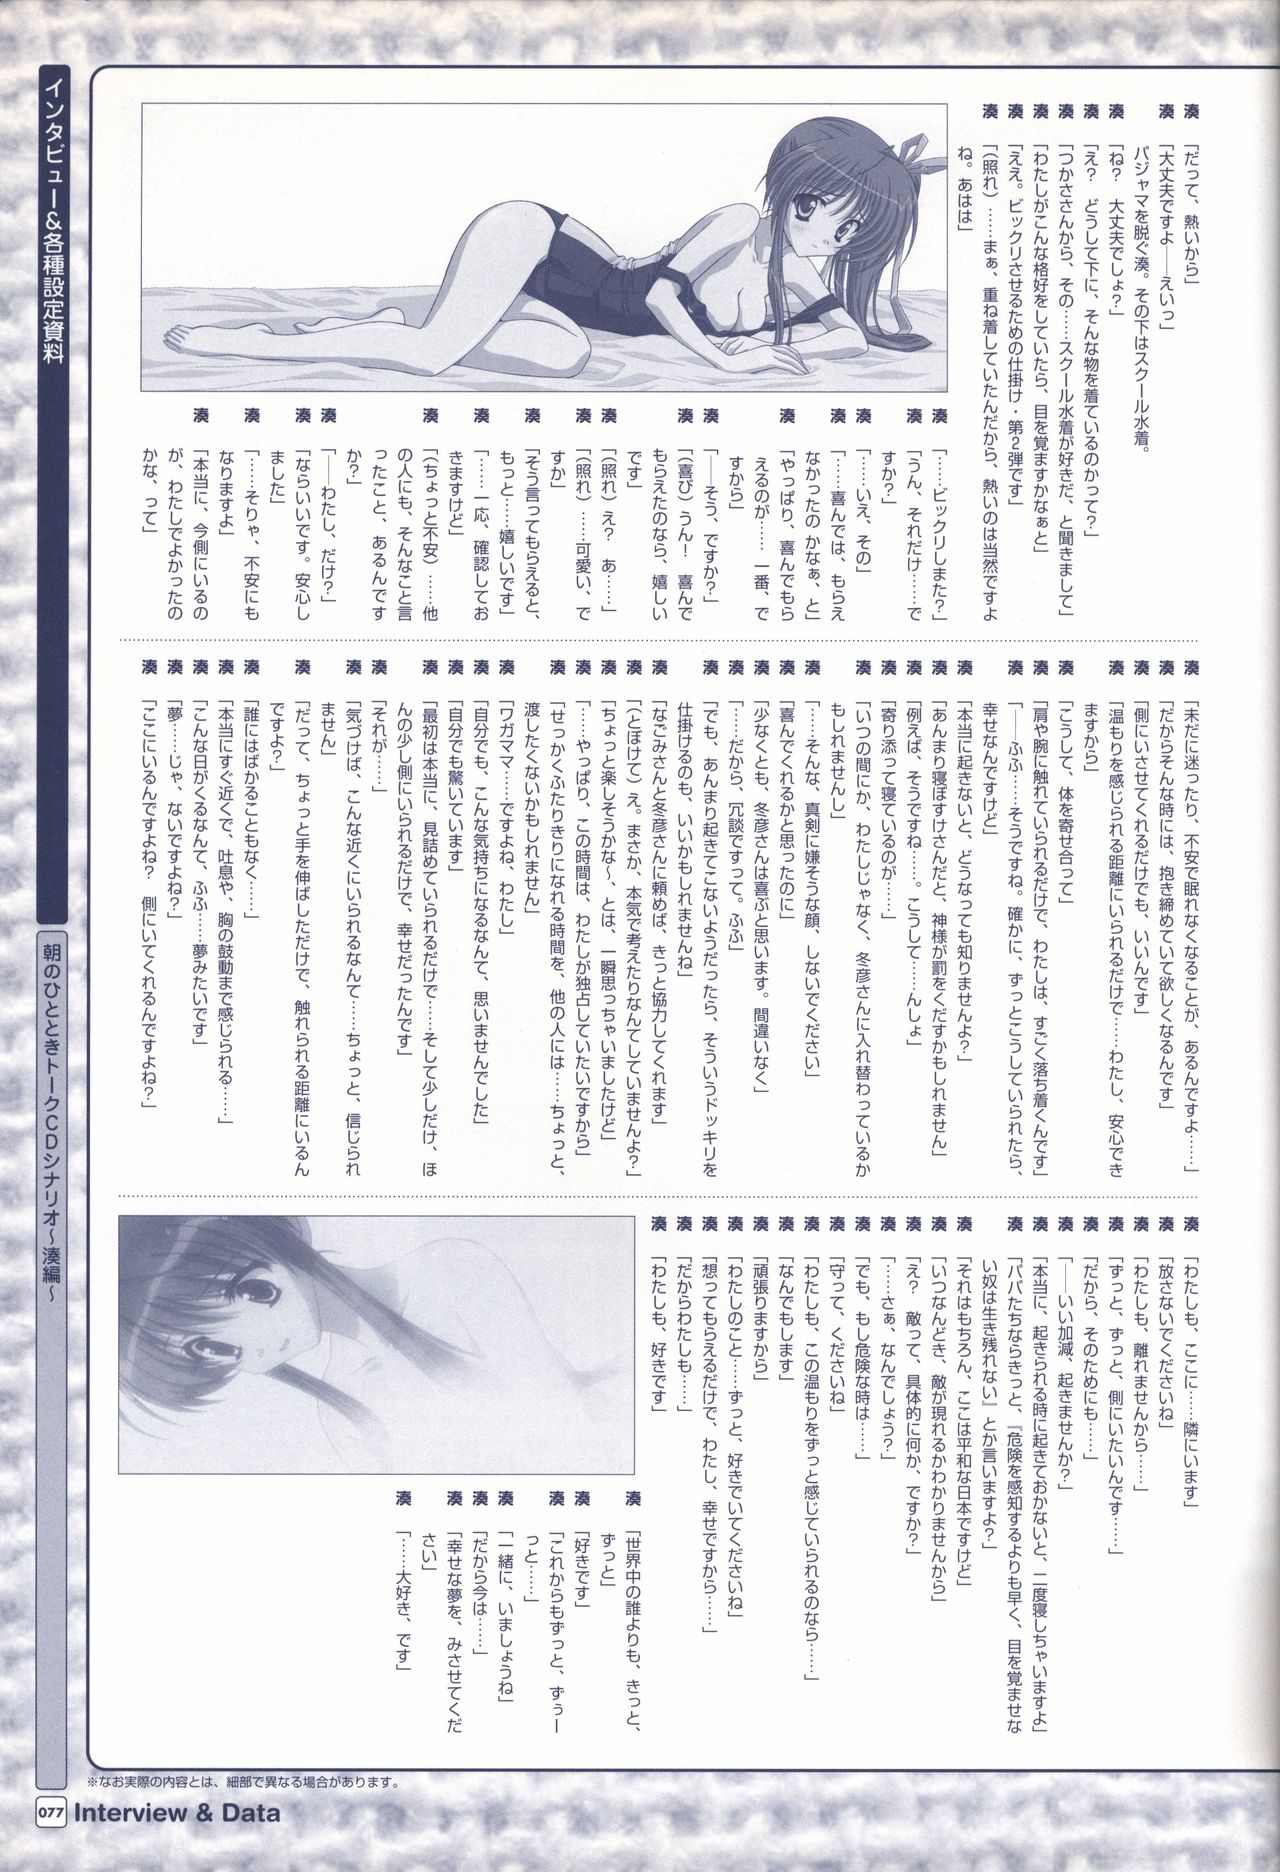 TV ANIME Akaneiro ni Somaru Saka Visual Guide Book 77